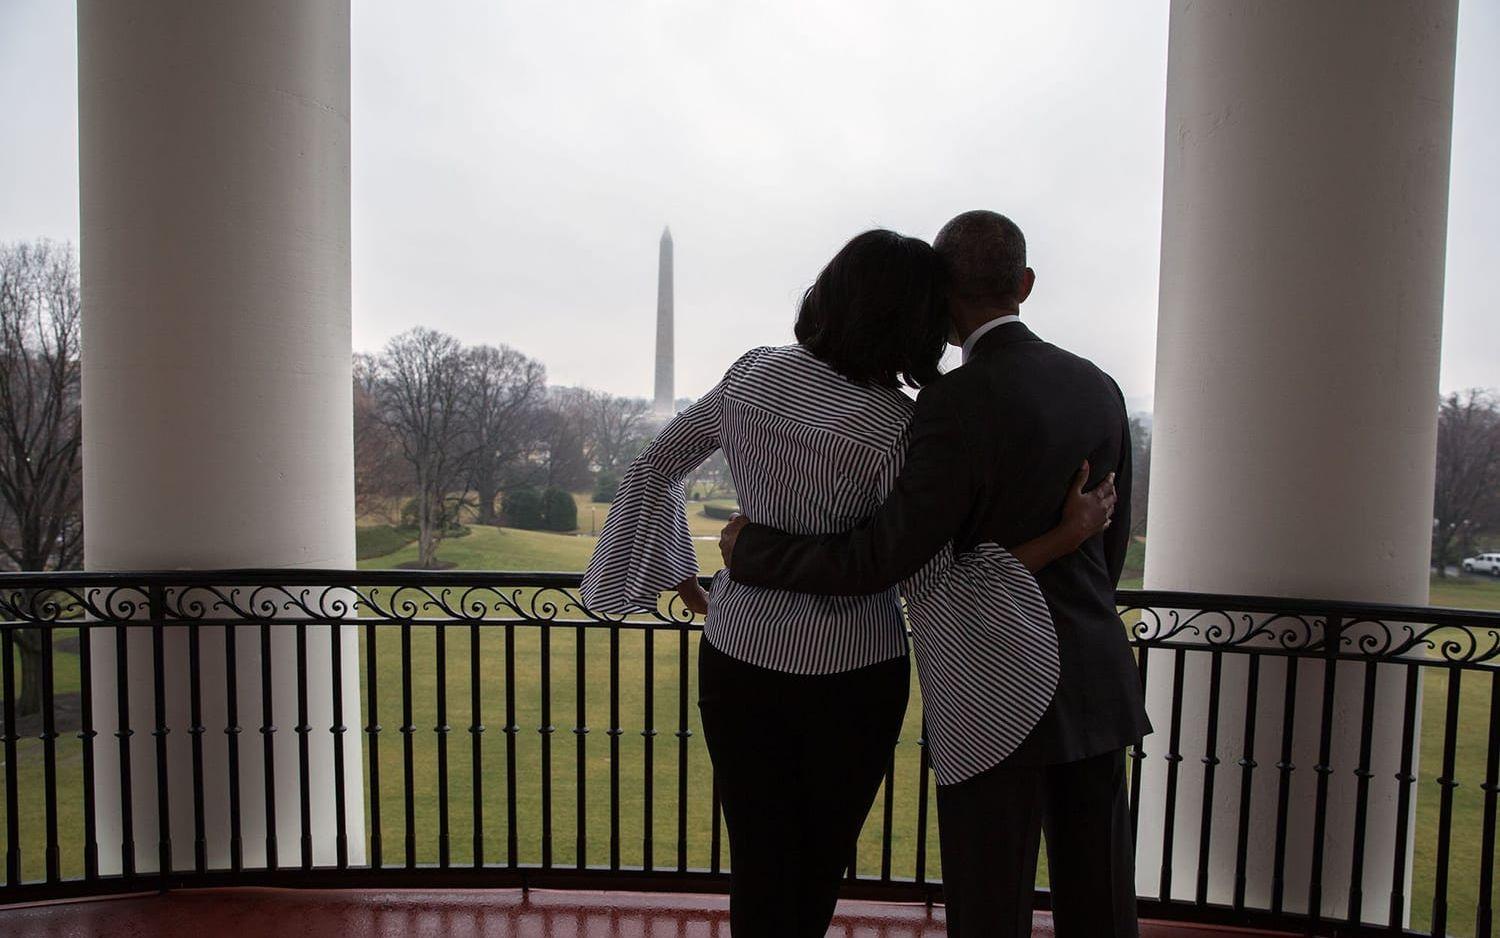 19 januari, 2017: Michelle Obama tackar på Twitter för de åtta åren: "Att vara landets första dam har varit en stor ära. Från djupet av mitt hjärta: Tack!" Foto: Pete Souza